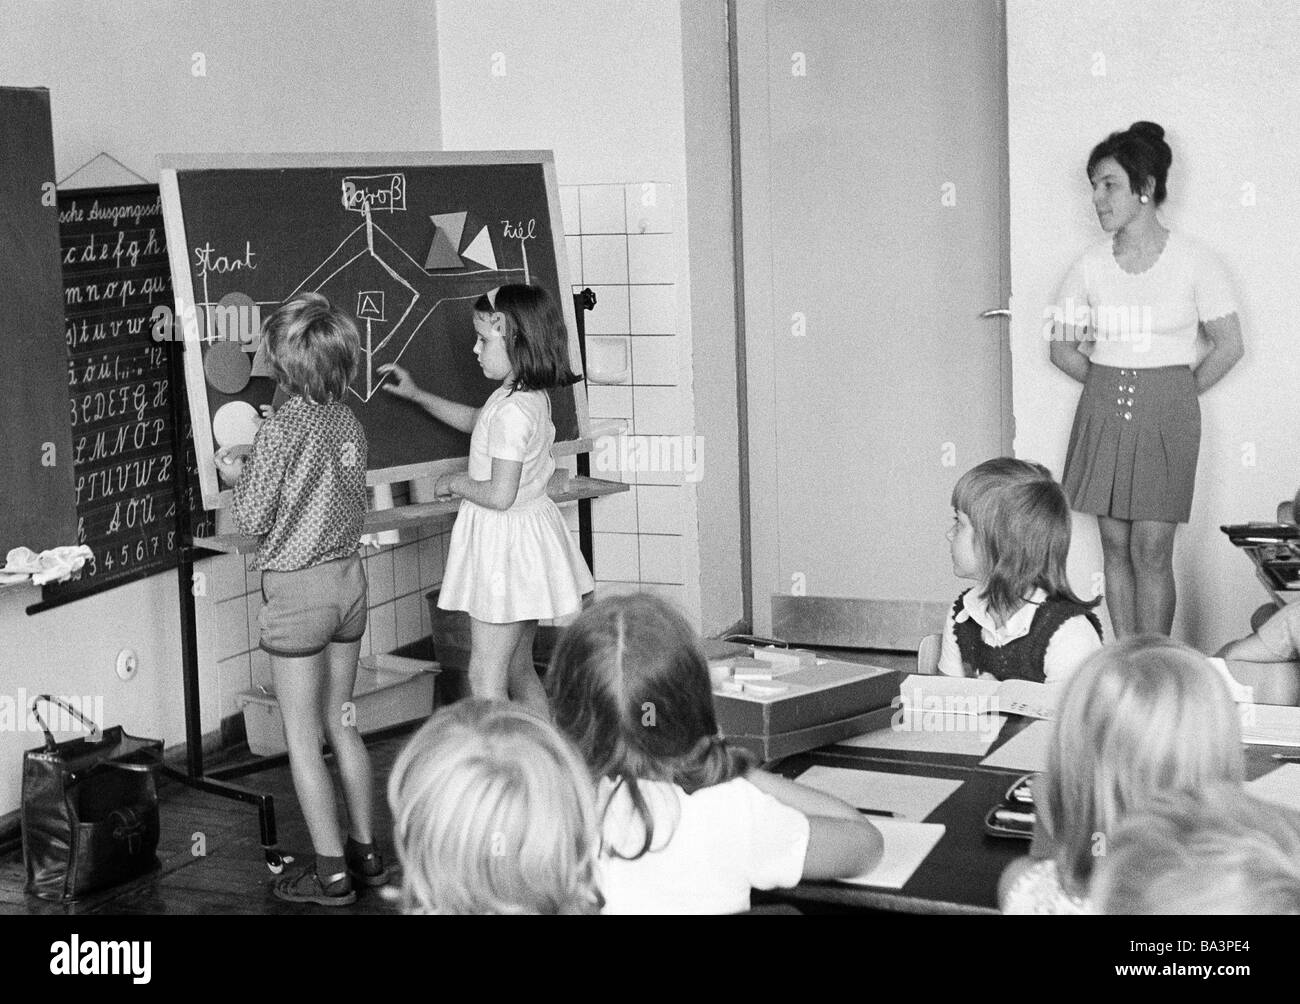 Années 70, photo en noir et blanc, l'édification, l'école, des écoliers et des écolières dans une classe d'école pendant les cours, l'enseignante, les enfants âgés de 7 à 10 ans, garçon et fille à un tableau noir Banque D'Images